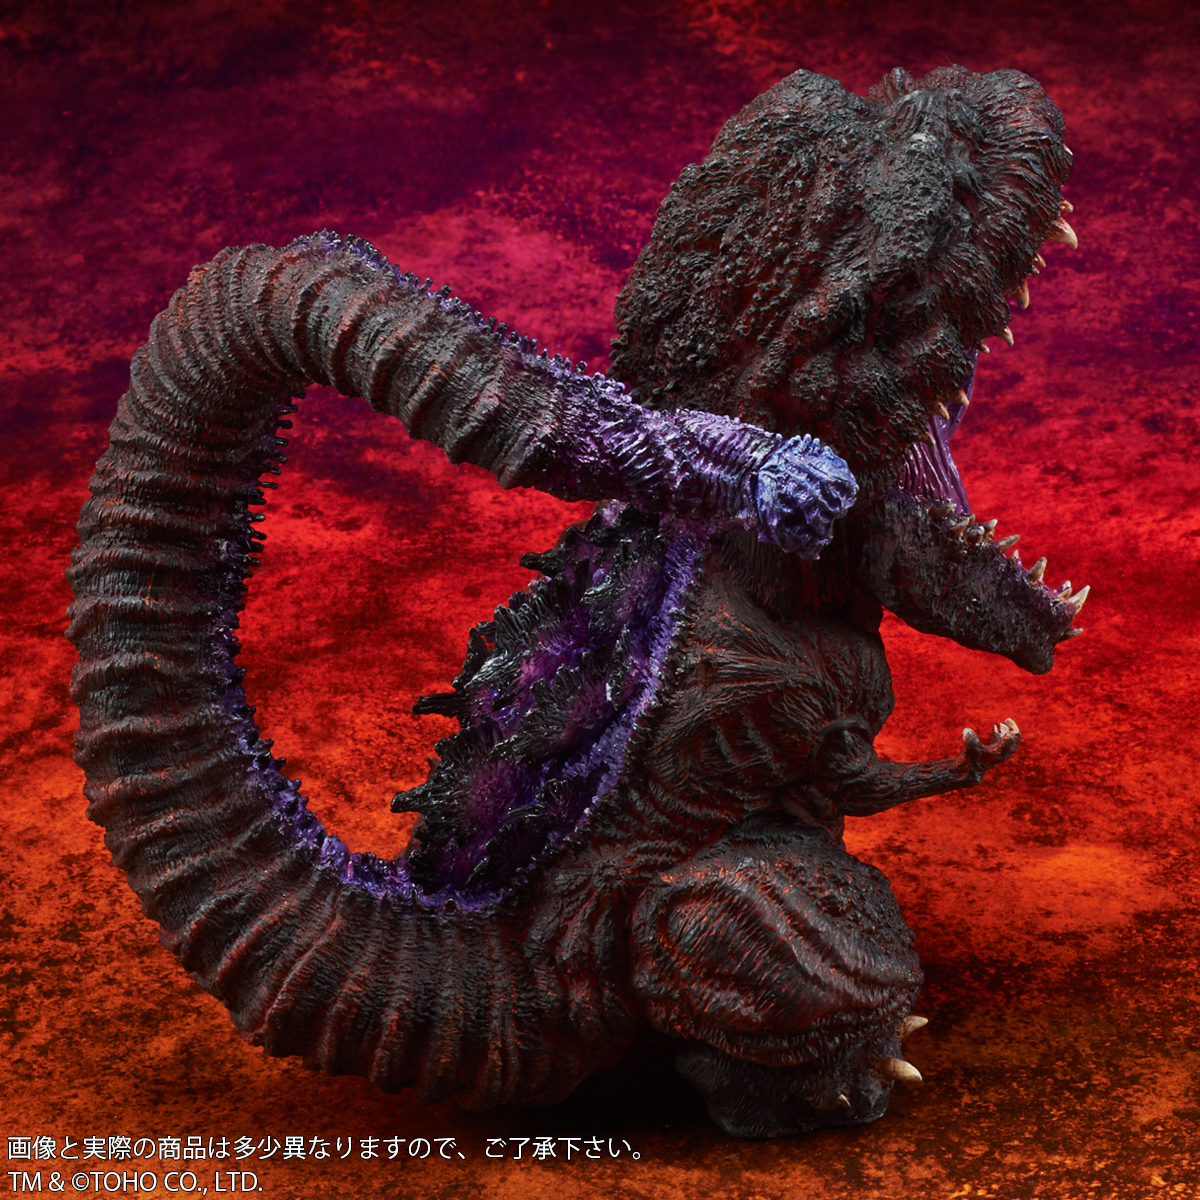 BANDAI Deforeal Shin Godzilla Light-up ver X-plus 2016 4th Form Awakening NEW 